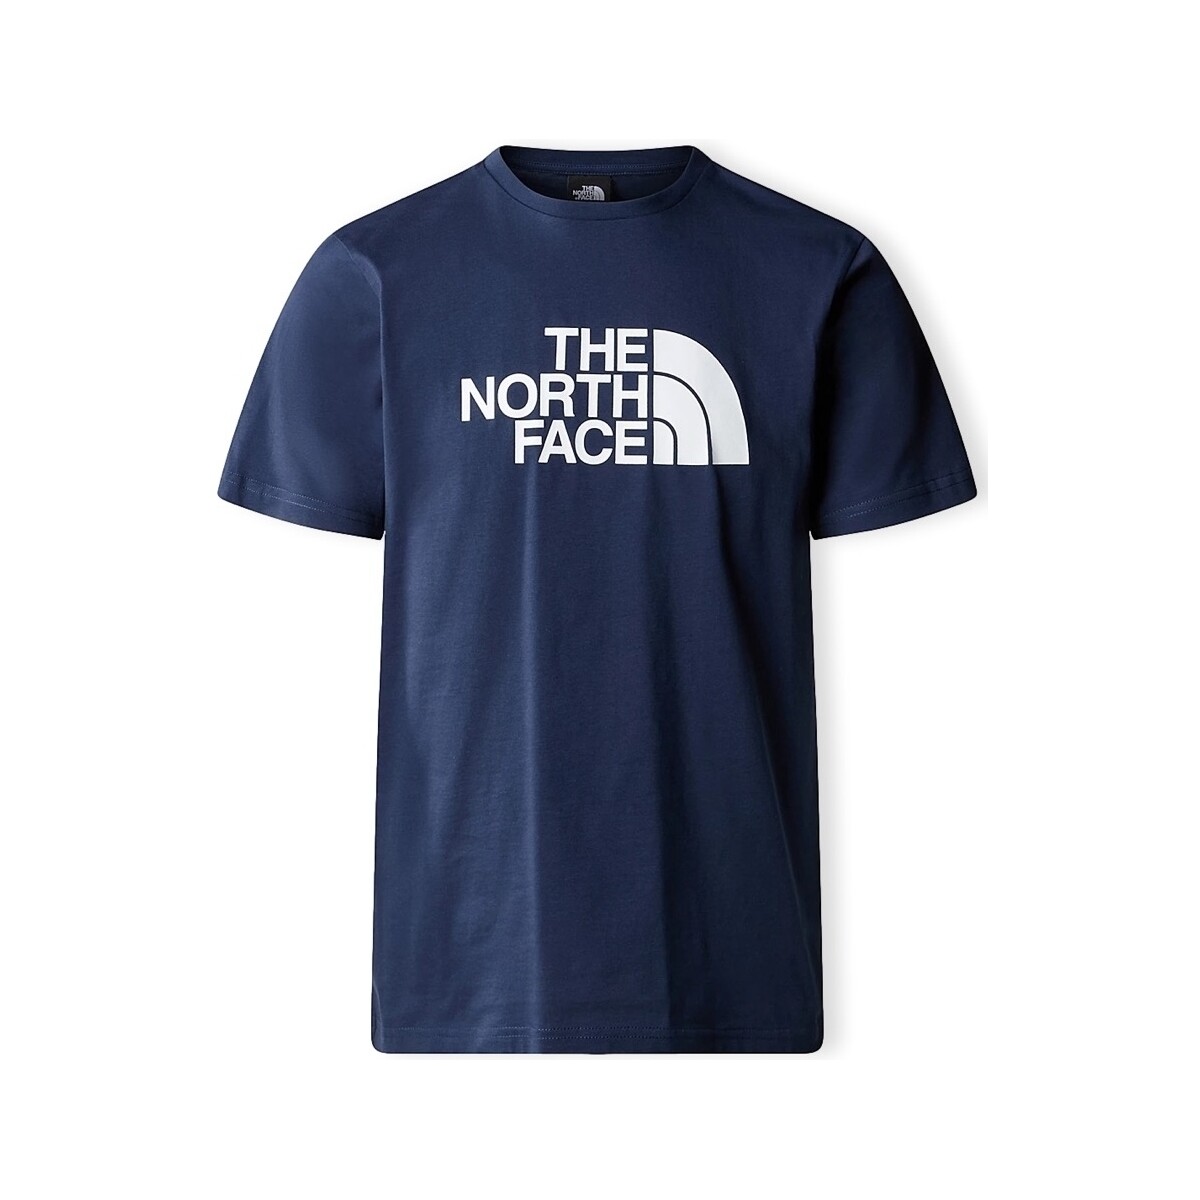 Ruhák Férfi Pólók / Galléros Pólók The North Face Easy T-Shirt - Summit Navy Kék